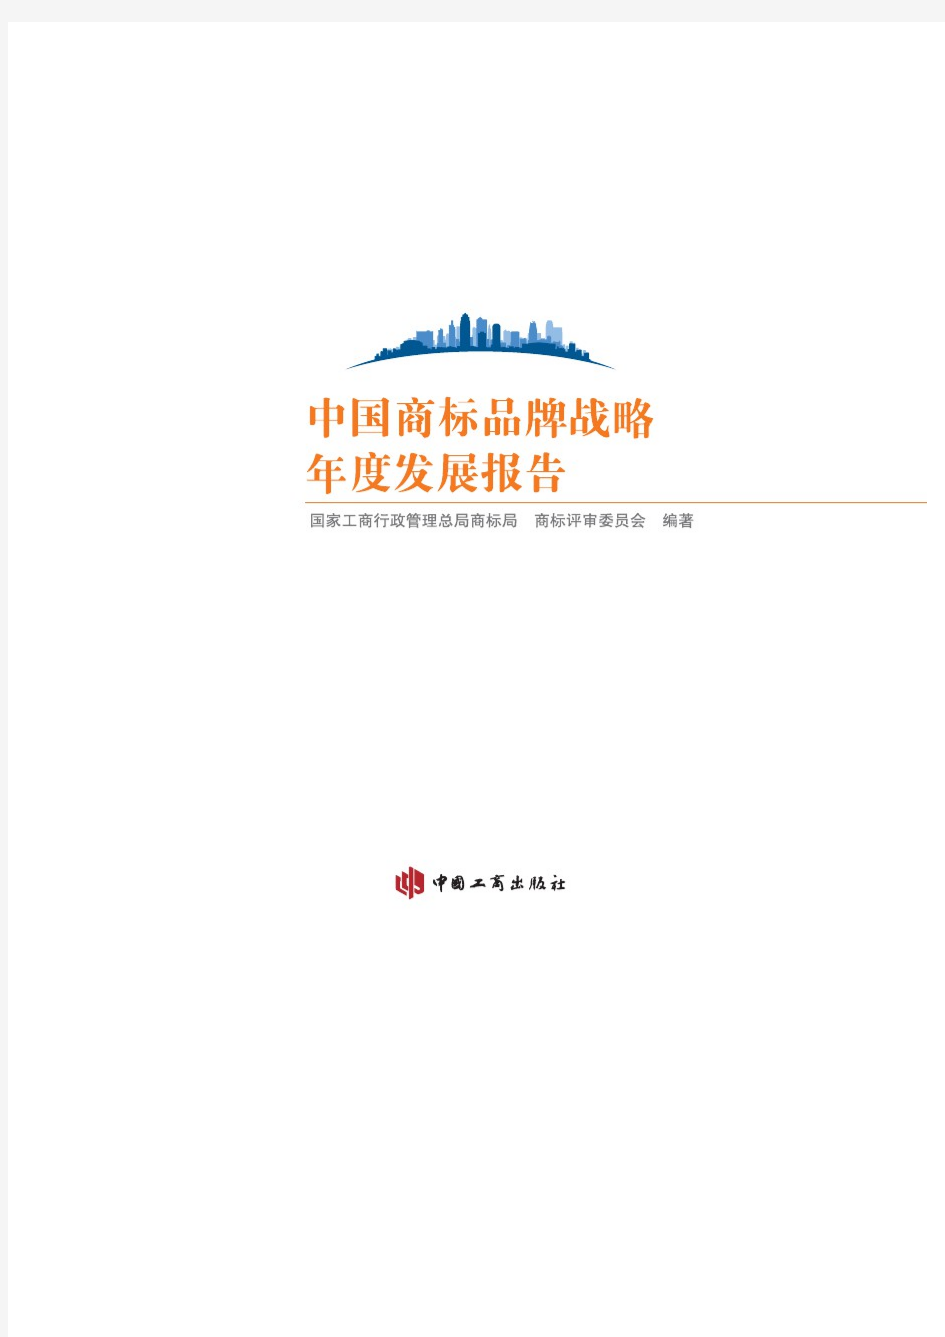 【精品报告】中国商标品牌战略年度发展报告